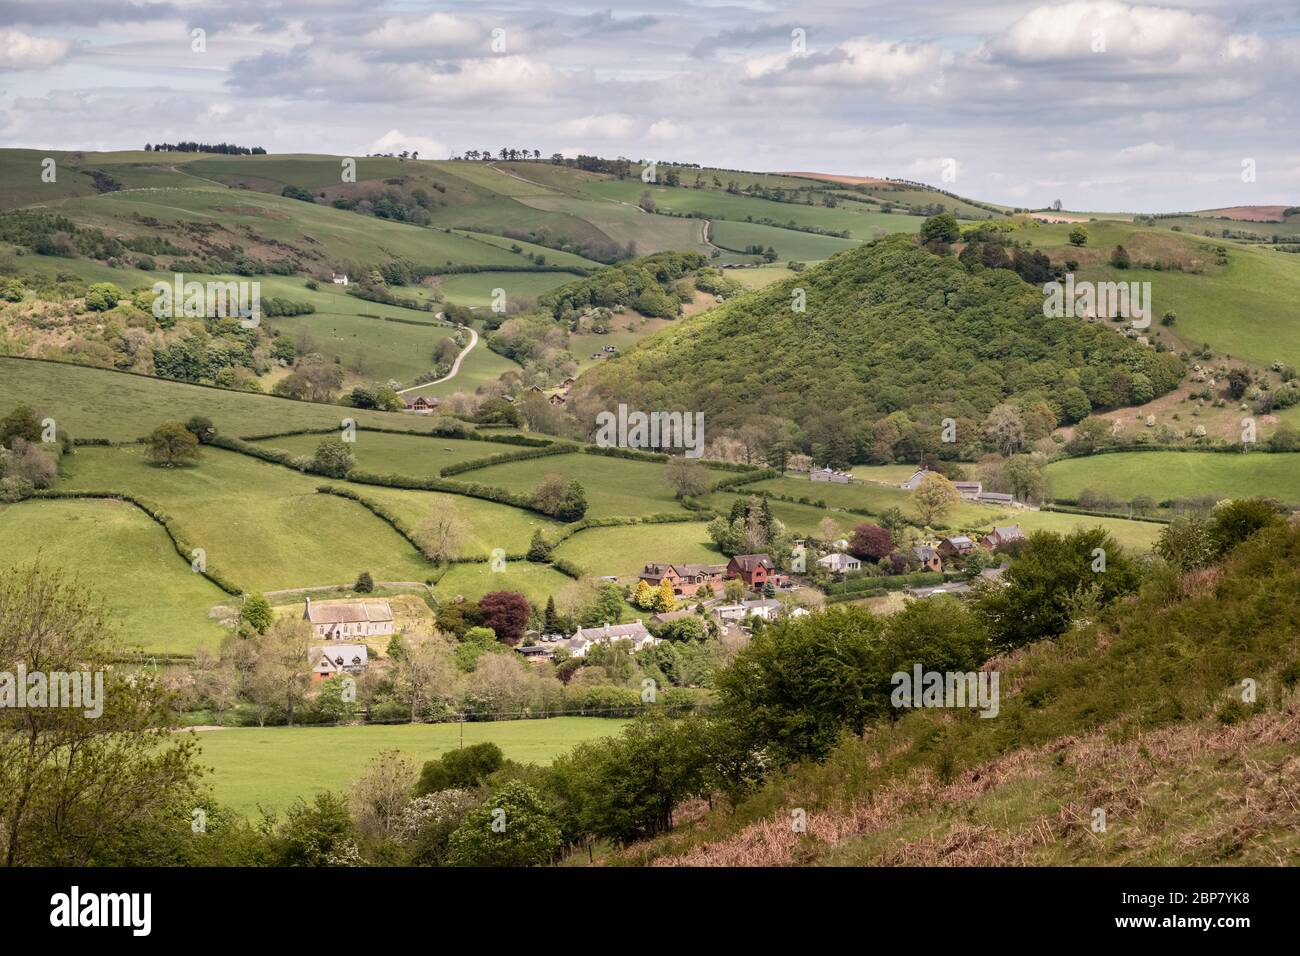 El pequeño pueblo de Llanfair Waterdine en el valle del río Tene, Shropshire, Reino Unido, en la frontera entre Inglaterra y Gales Foto de stock